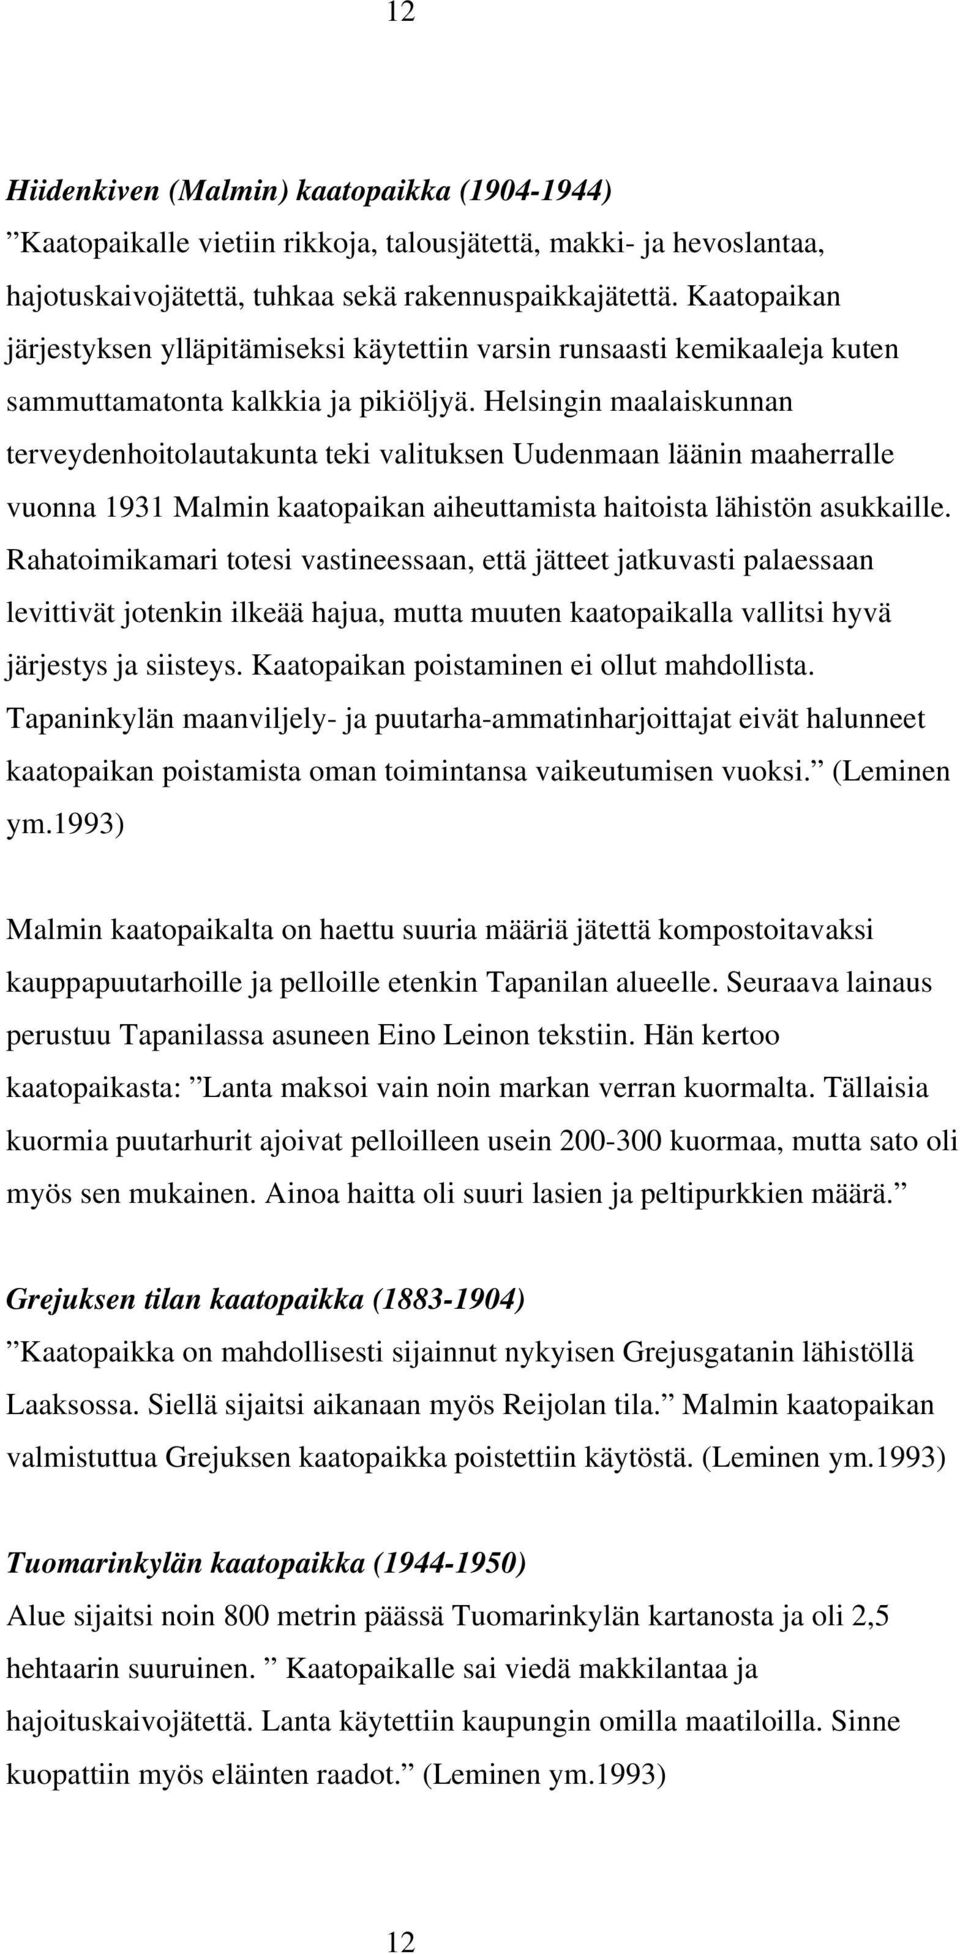 Helsingin maalaiskunnan terveydenhoitolautakunta teki valituksen Uudenmaan läänin maaherralle vuonna 1931 Malmin kaatopaikan aiheuttamista haitoista lähistön asukkaille.